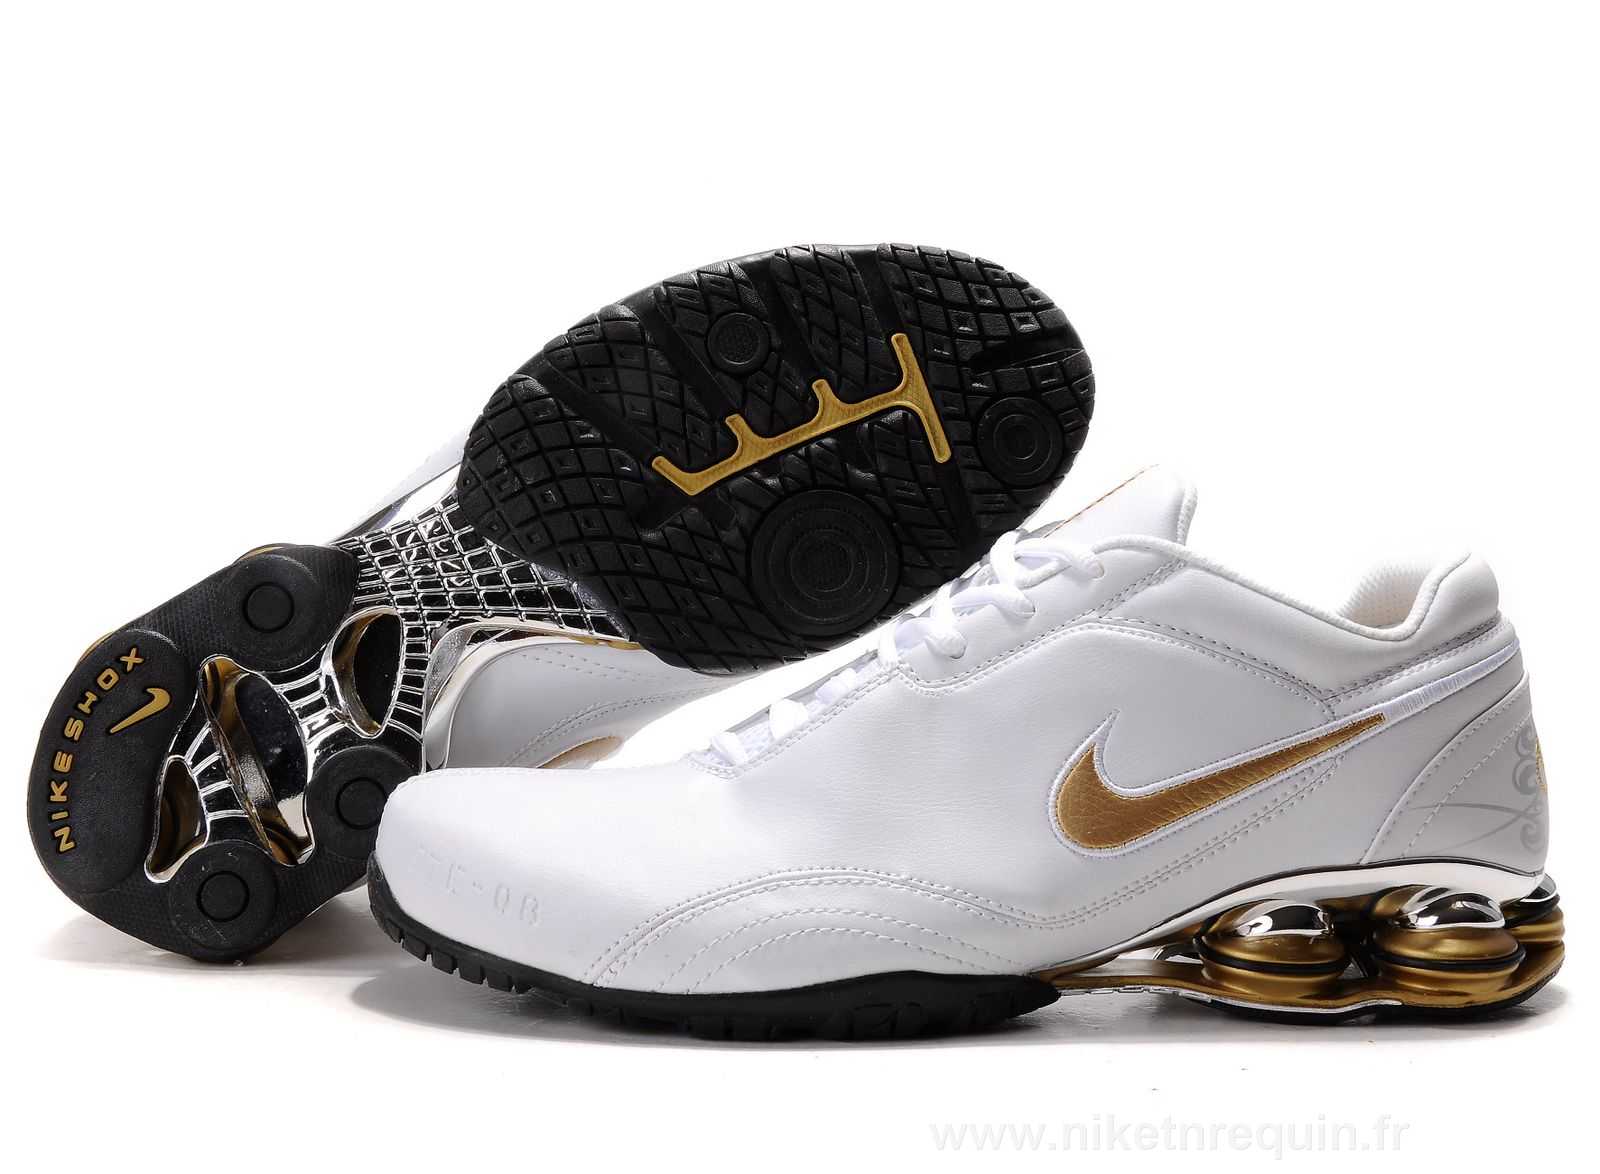 Blanc Et Chaussures Ou Nikeshox R5